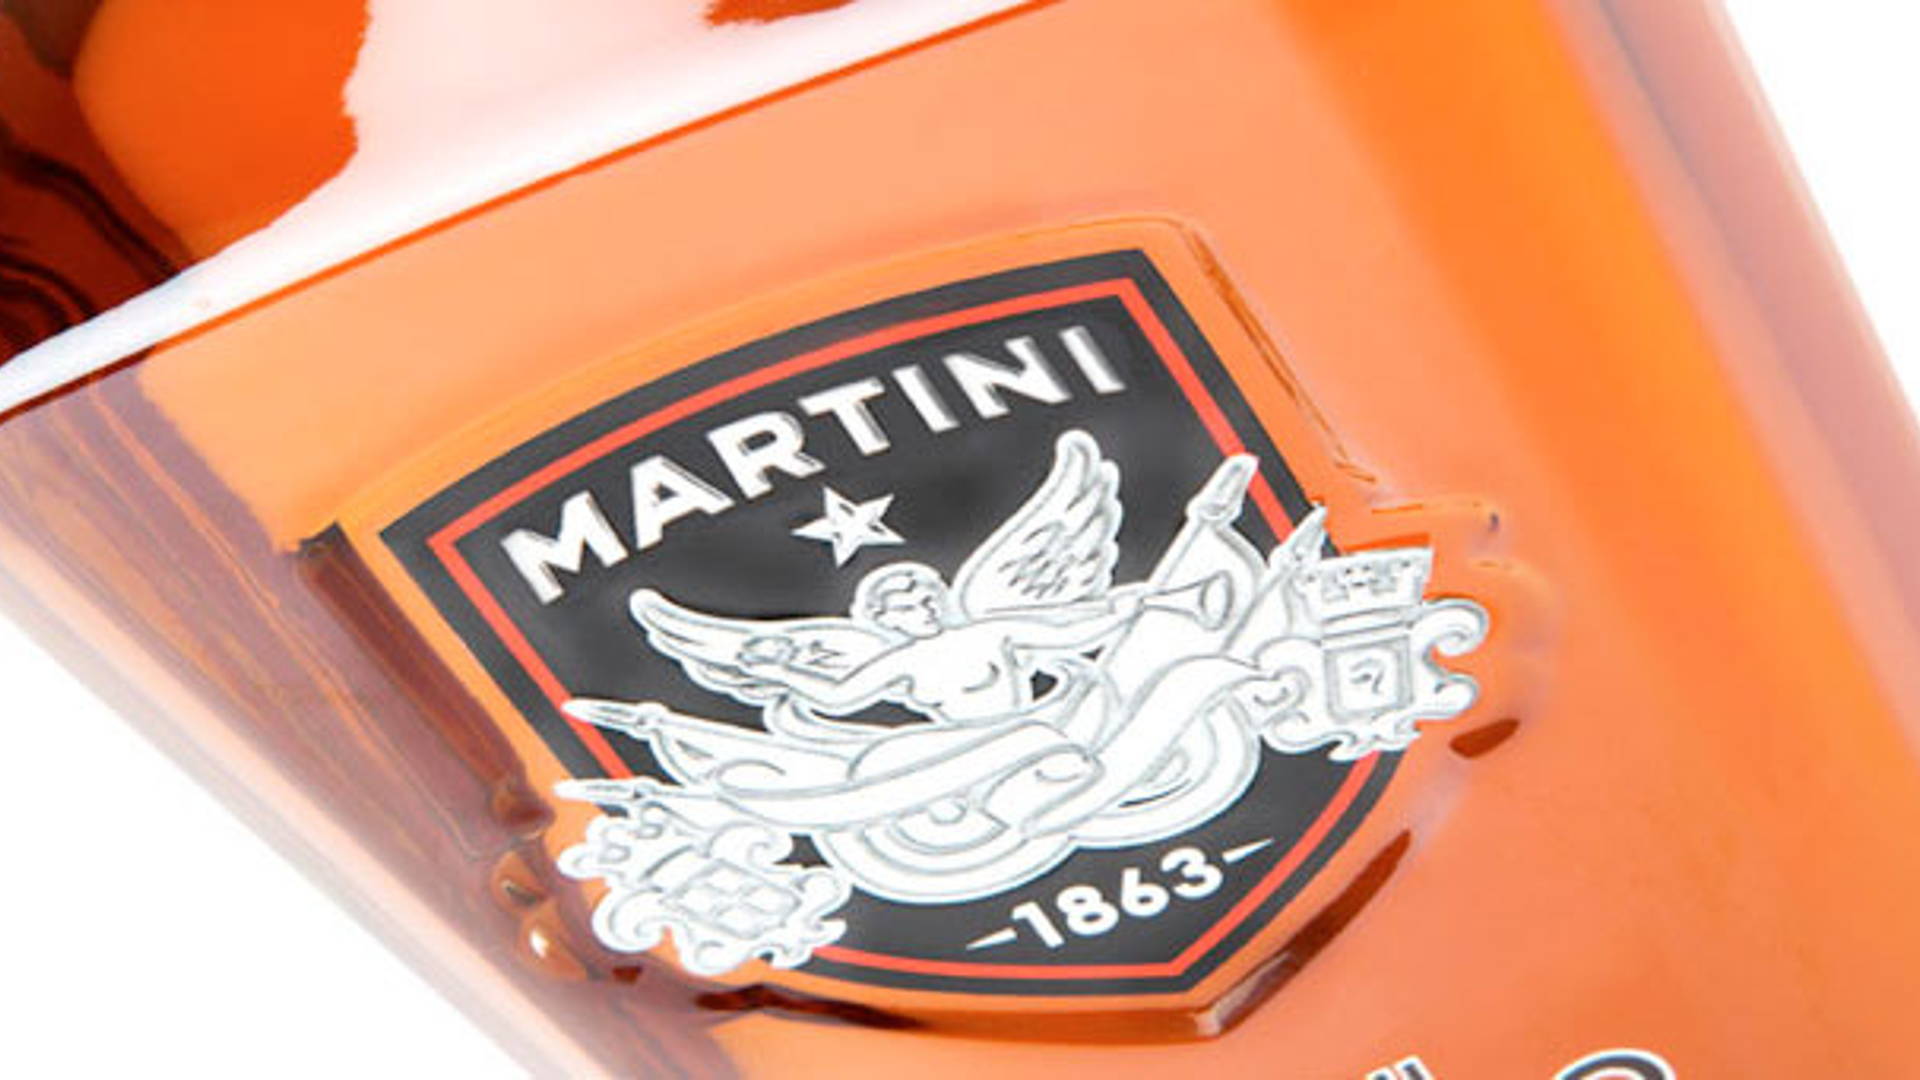 Featured image for Martini Spirito